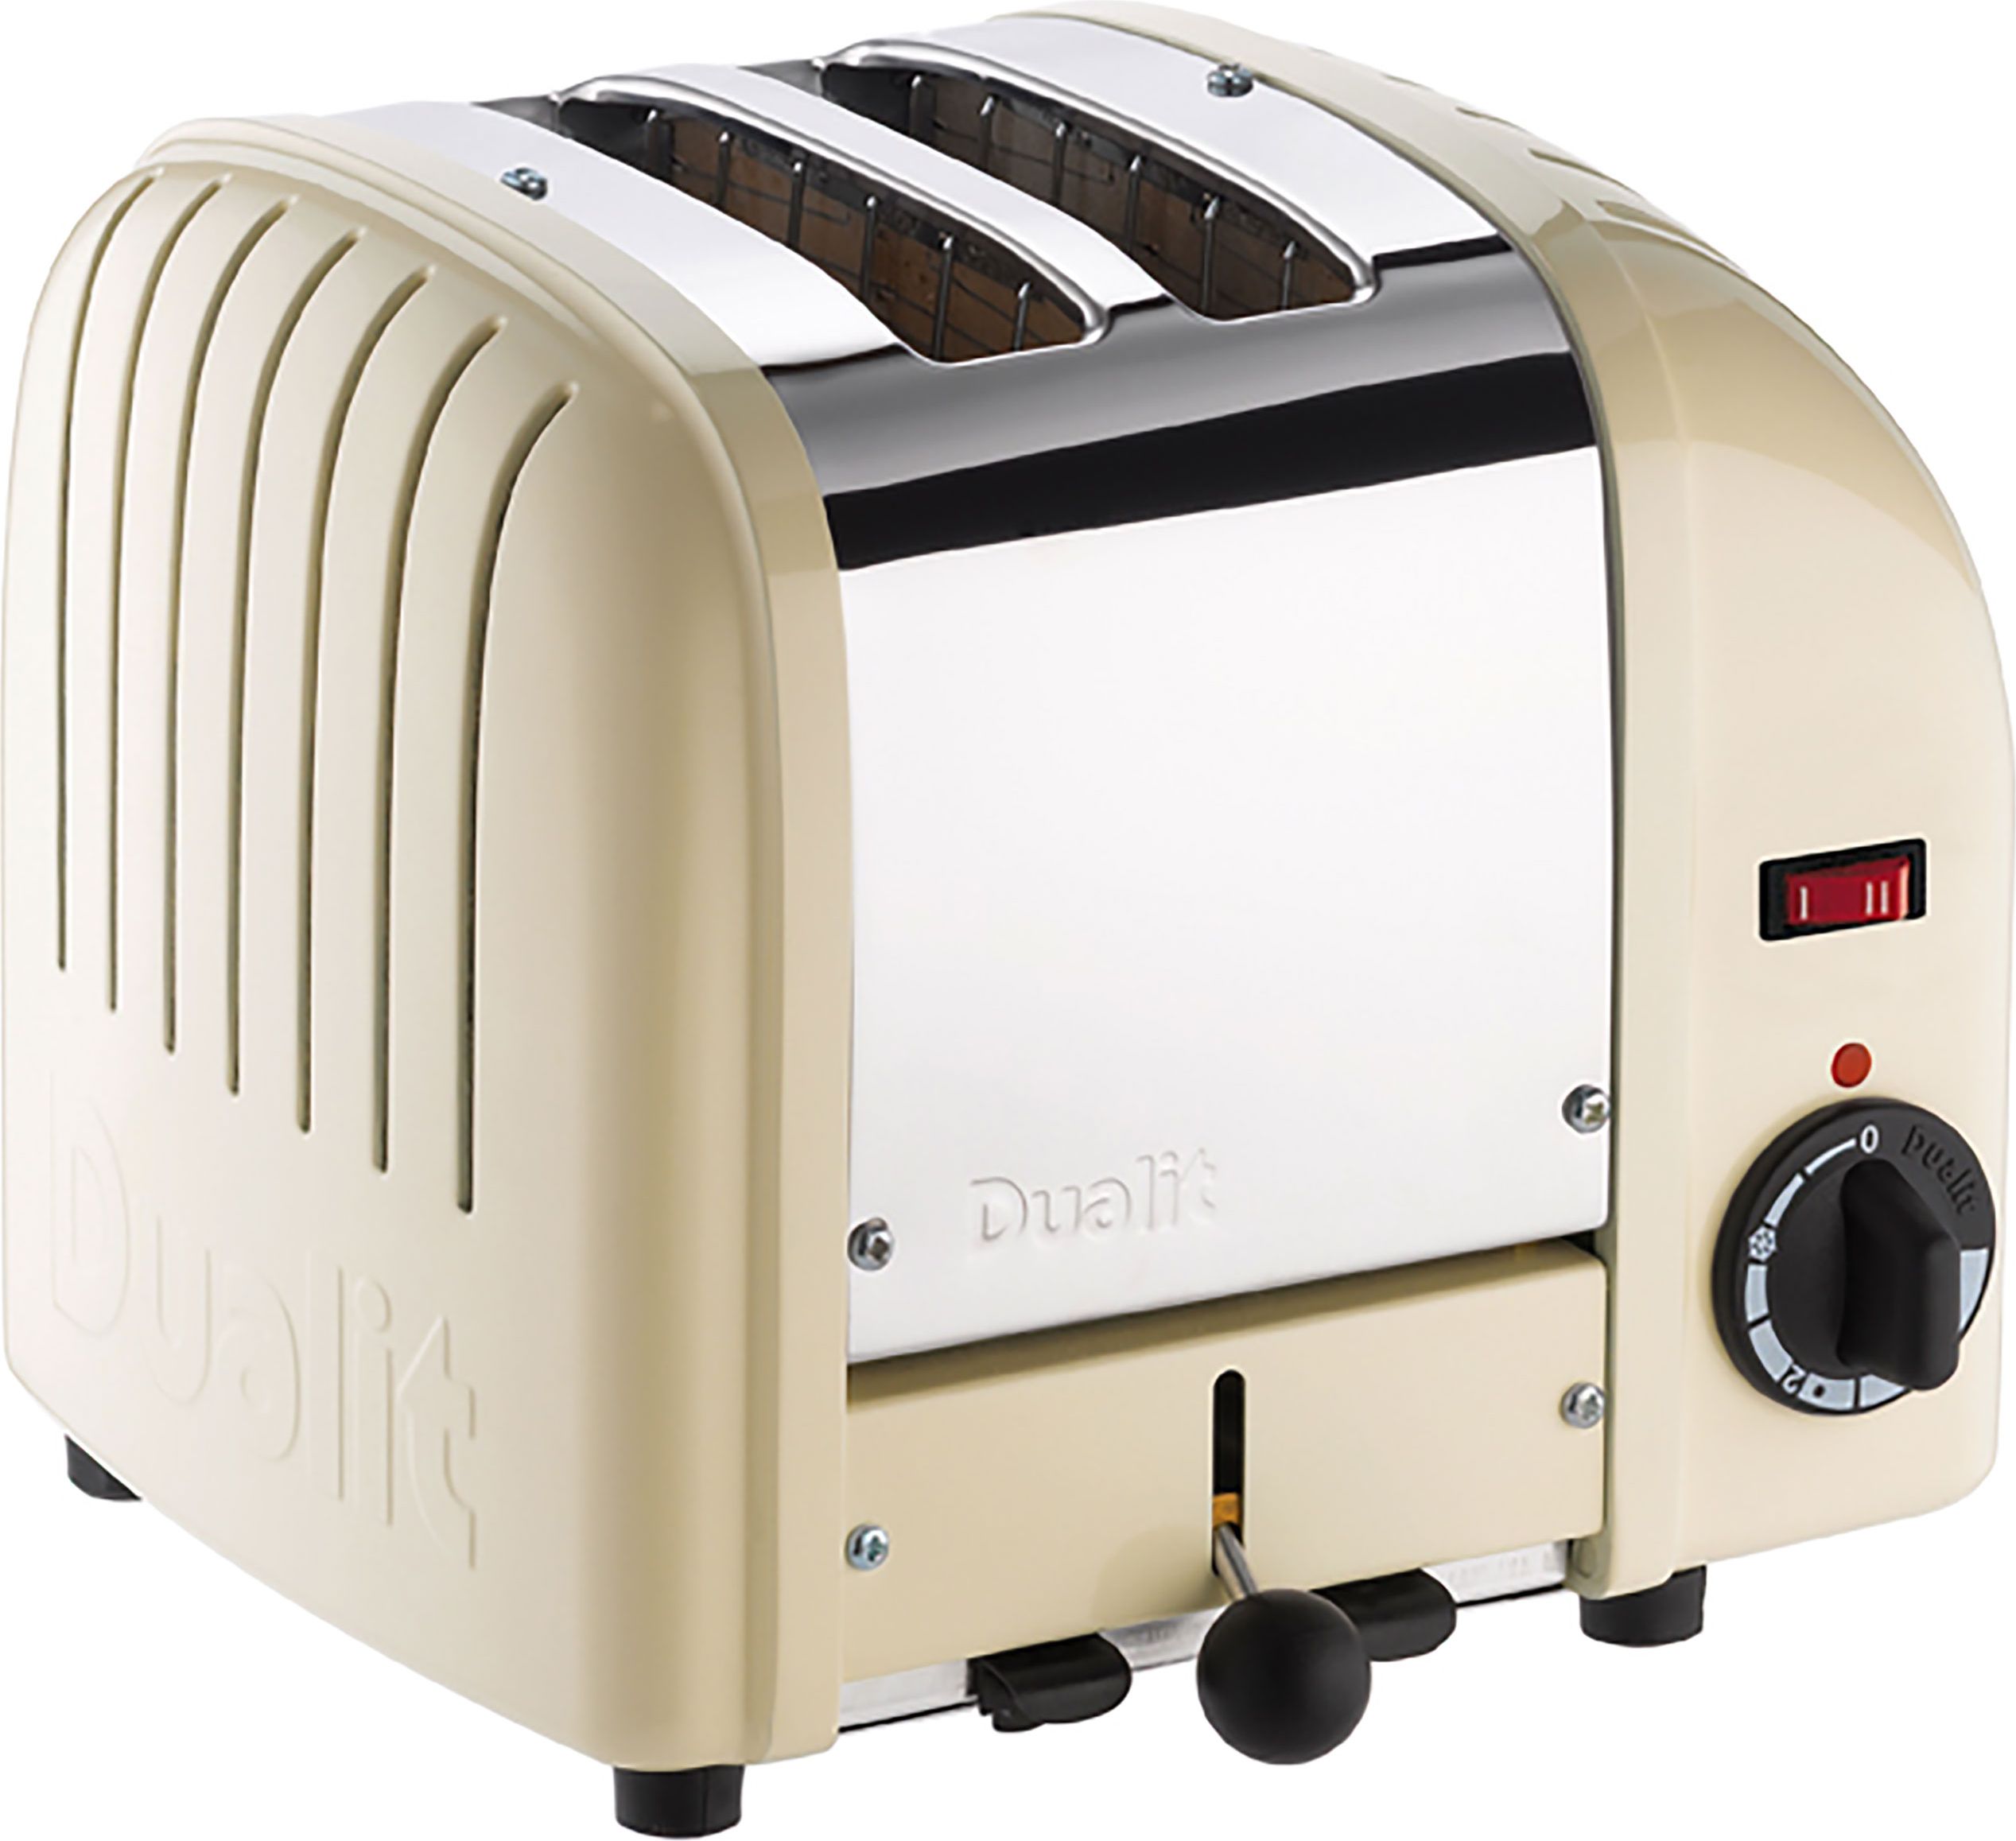 Dualit Classic Vario 20247 2 Slice Toaster - Cream, Cream